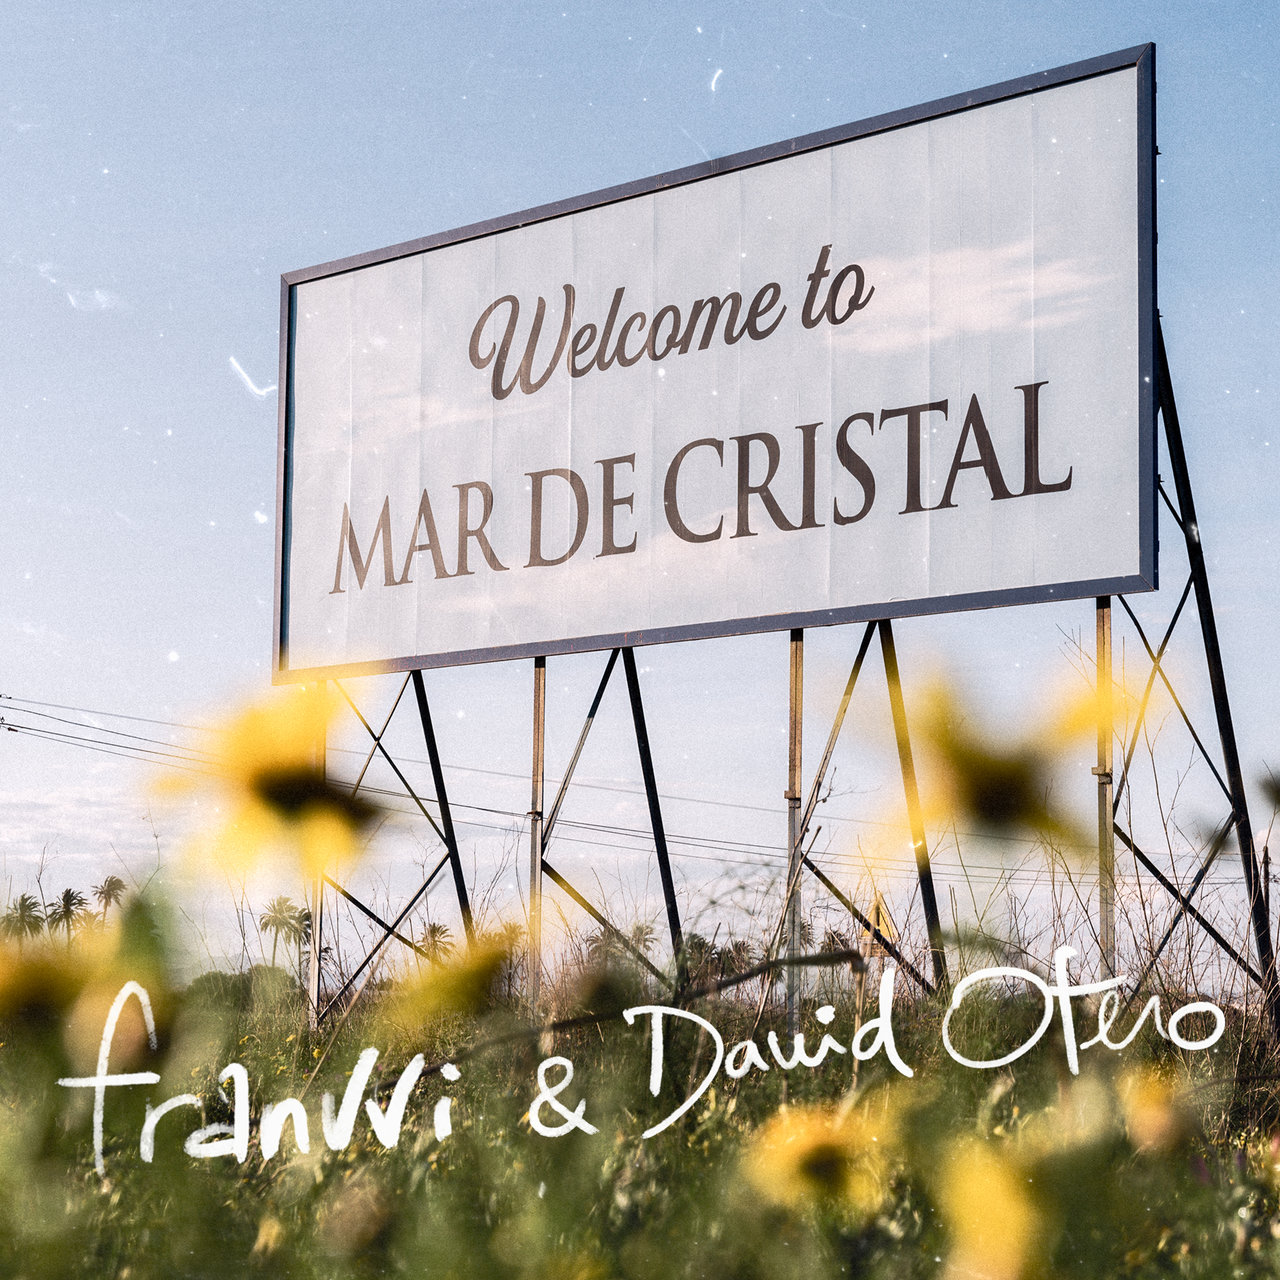 franvvi & David Otero — Mar de Cristal cover artwork